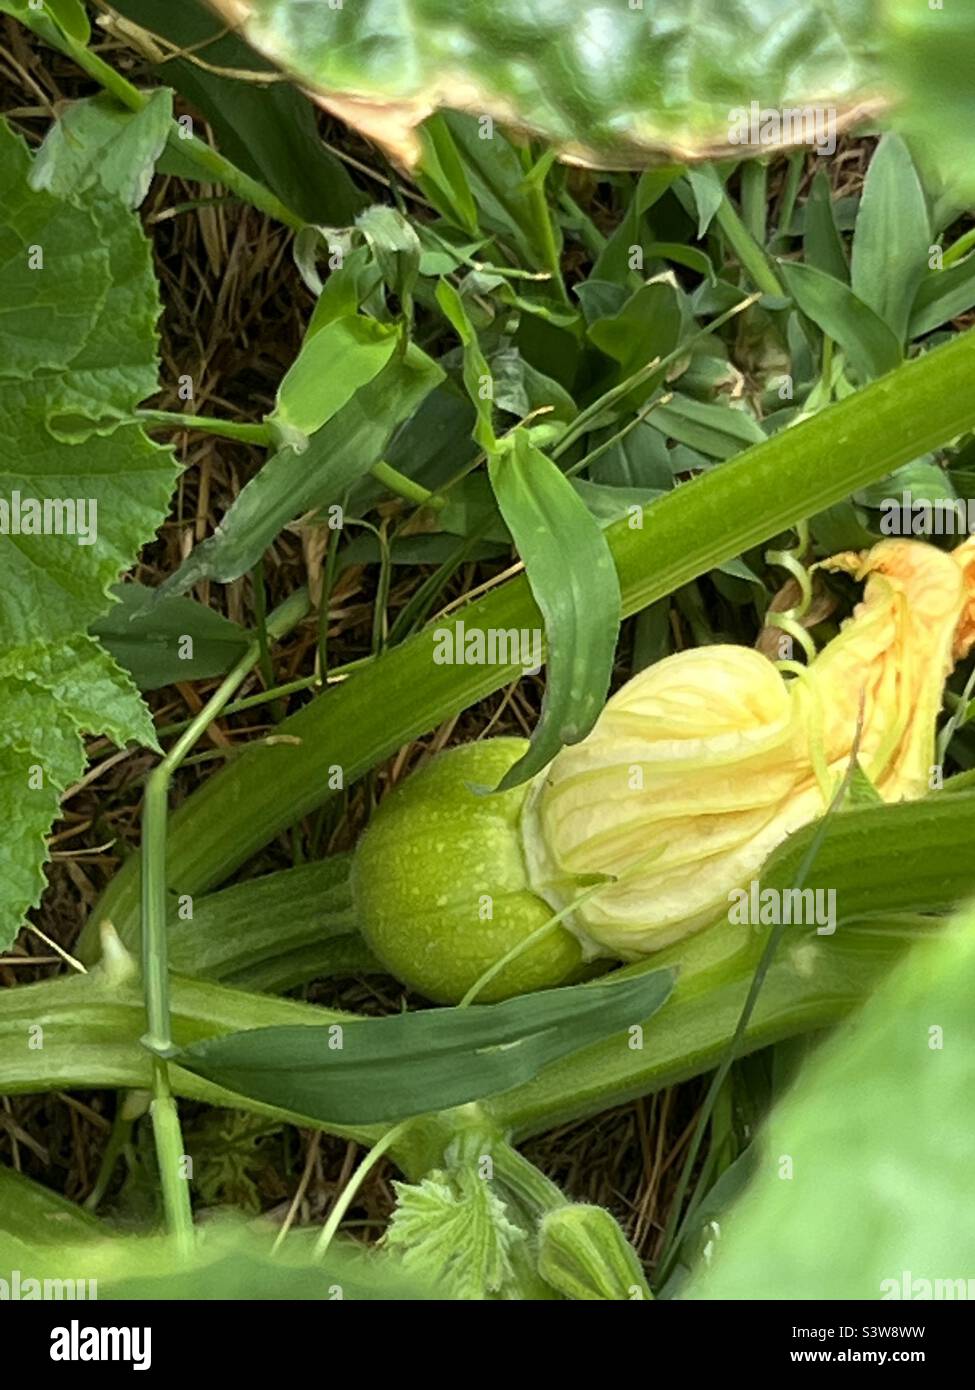 Pumpkins in the garden Stock Photo